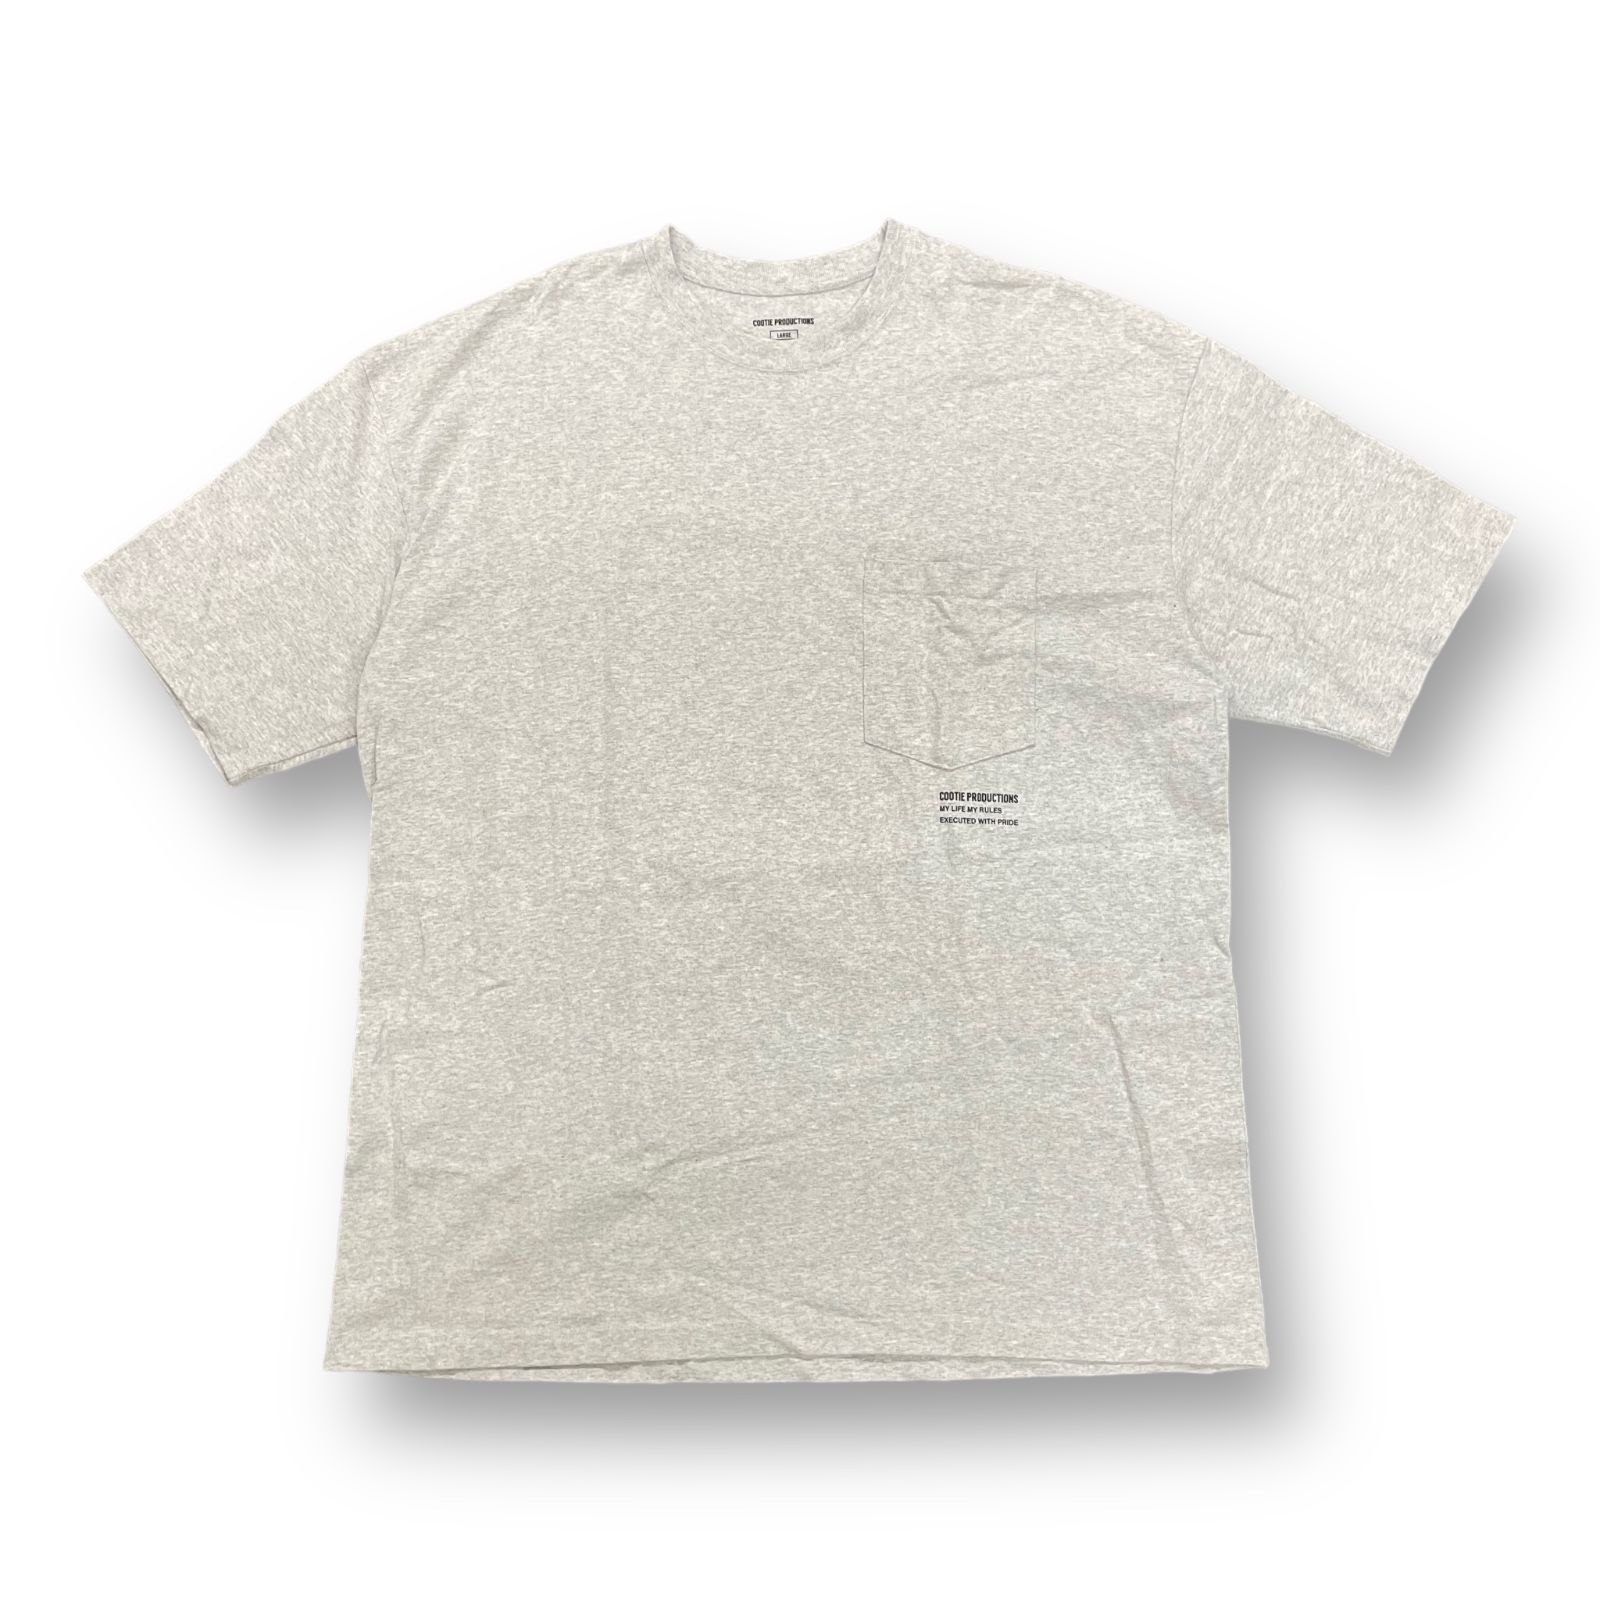 COOTIE/クーティー Oversized Pocket S/S Tee オーバーサイズ ポケットTシャツ【007】